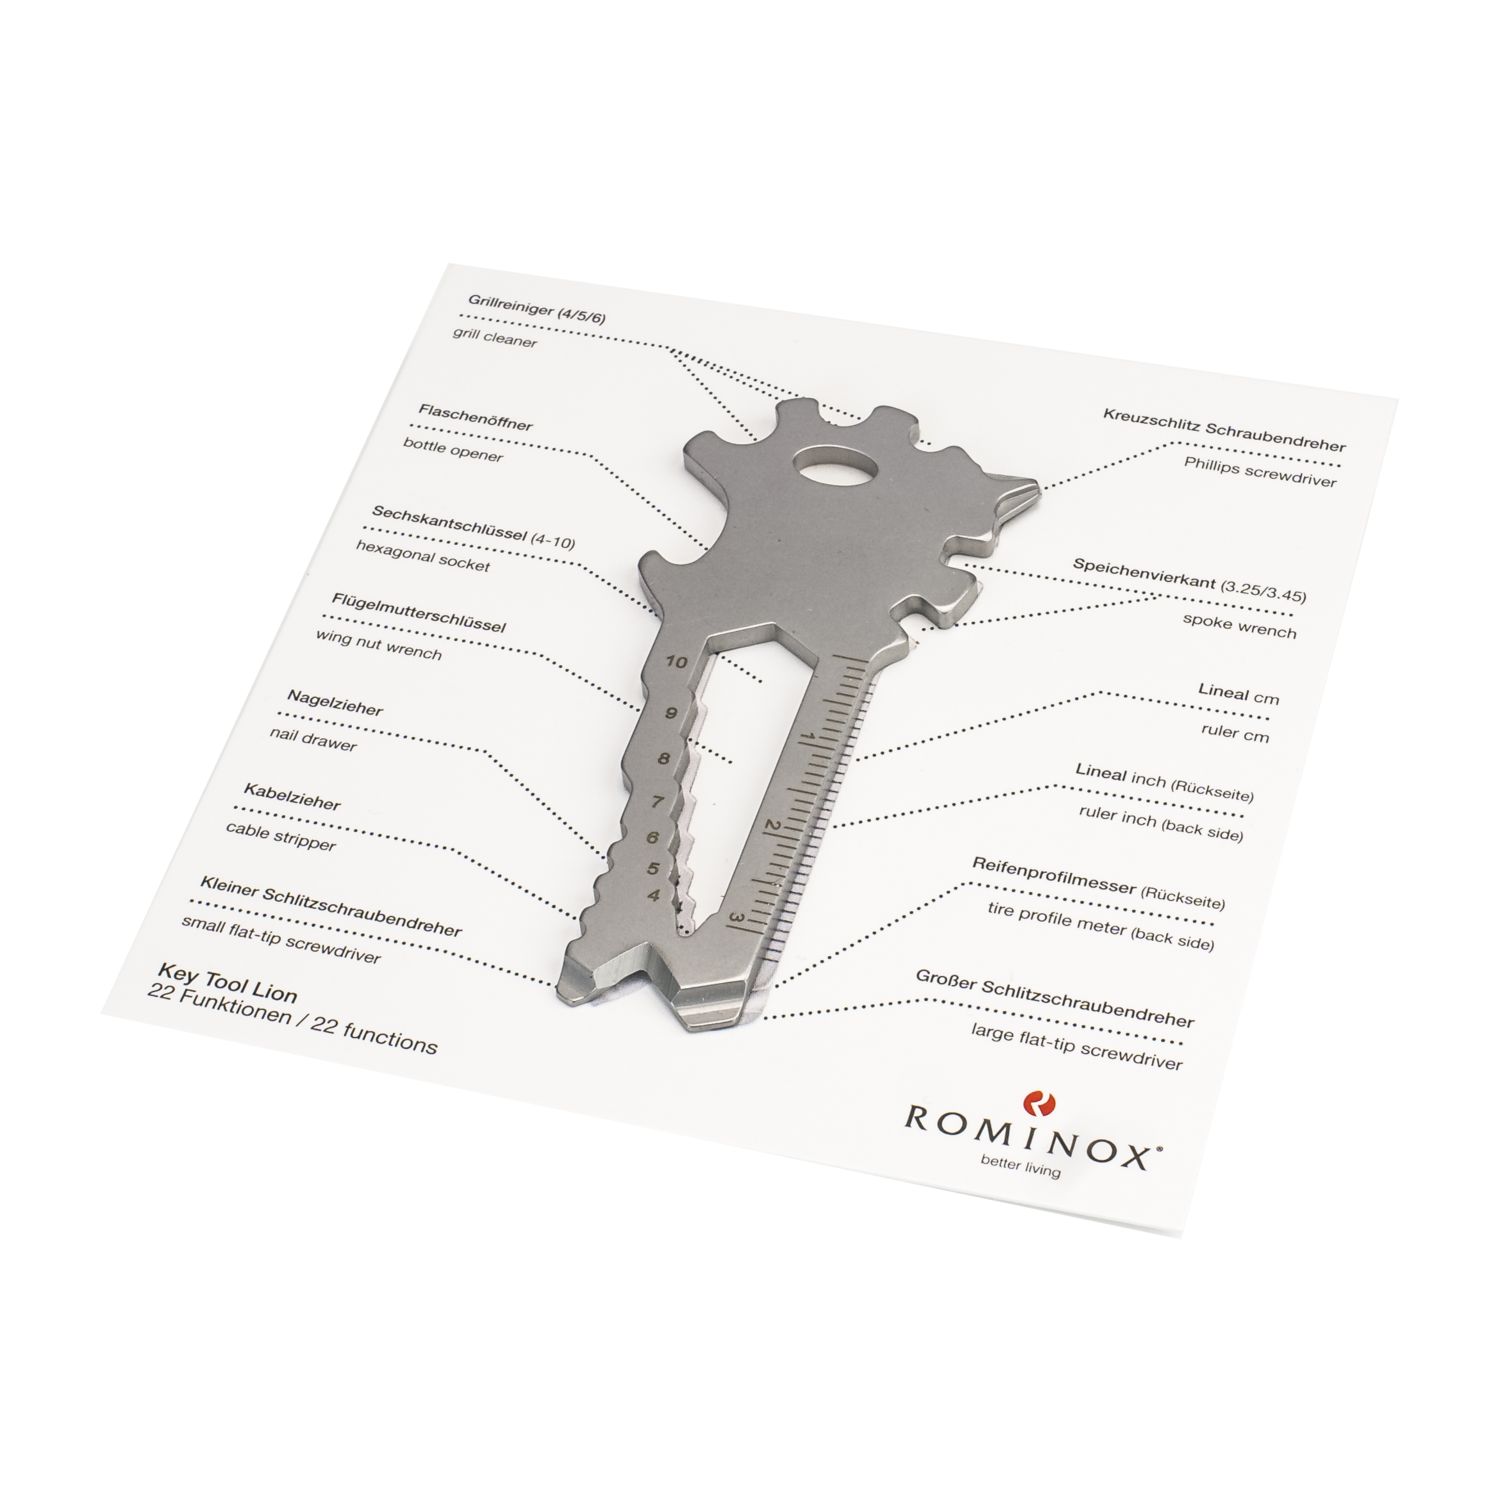 ROMINOX® Key Tool Lion (22 Funktionen) Große Helden (Einzelhandel) 2K2105b